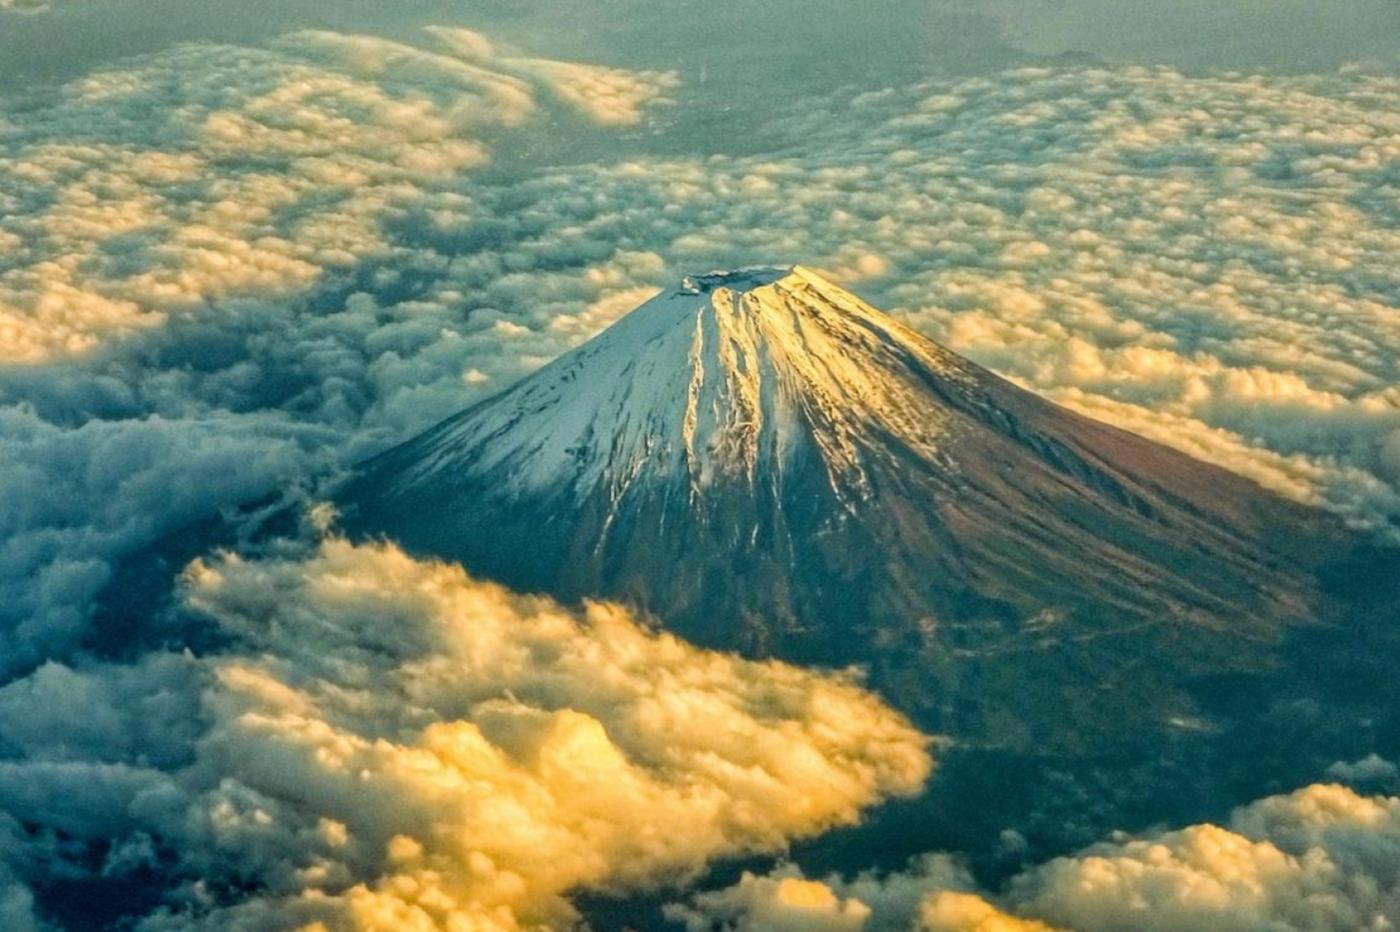 Le mont Fuji au Japon